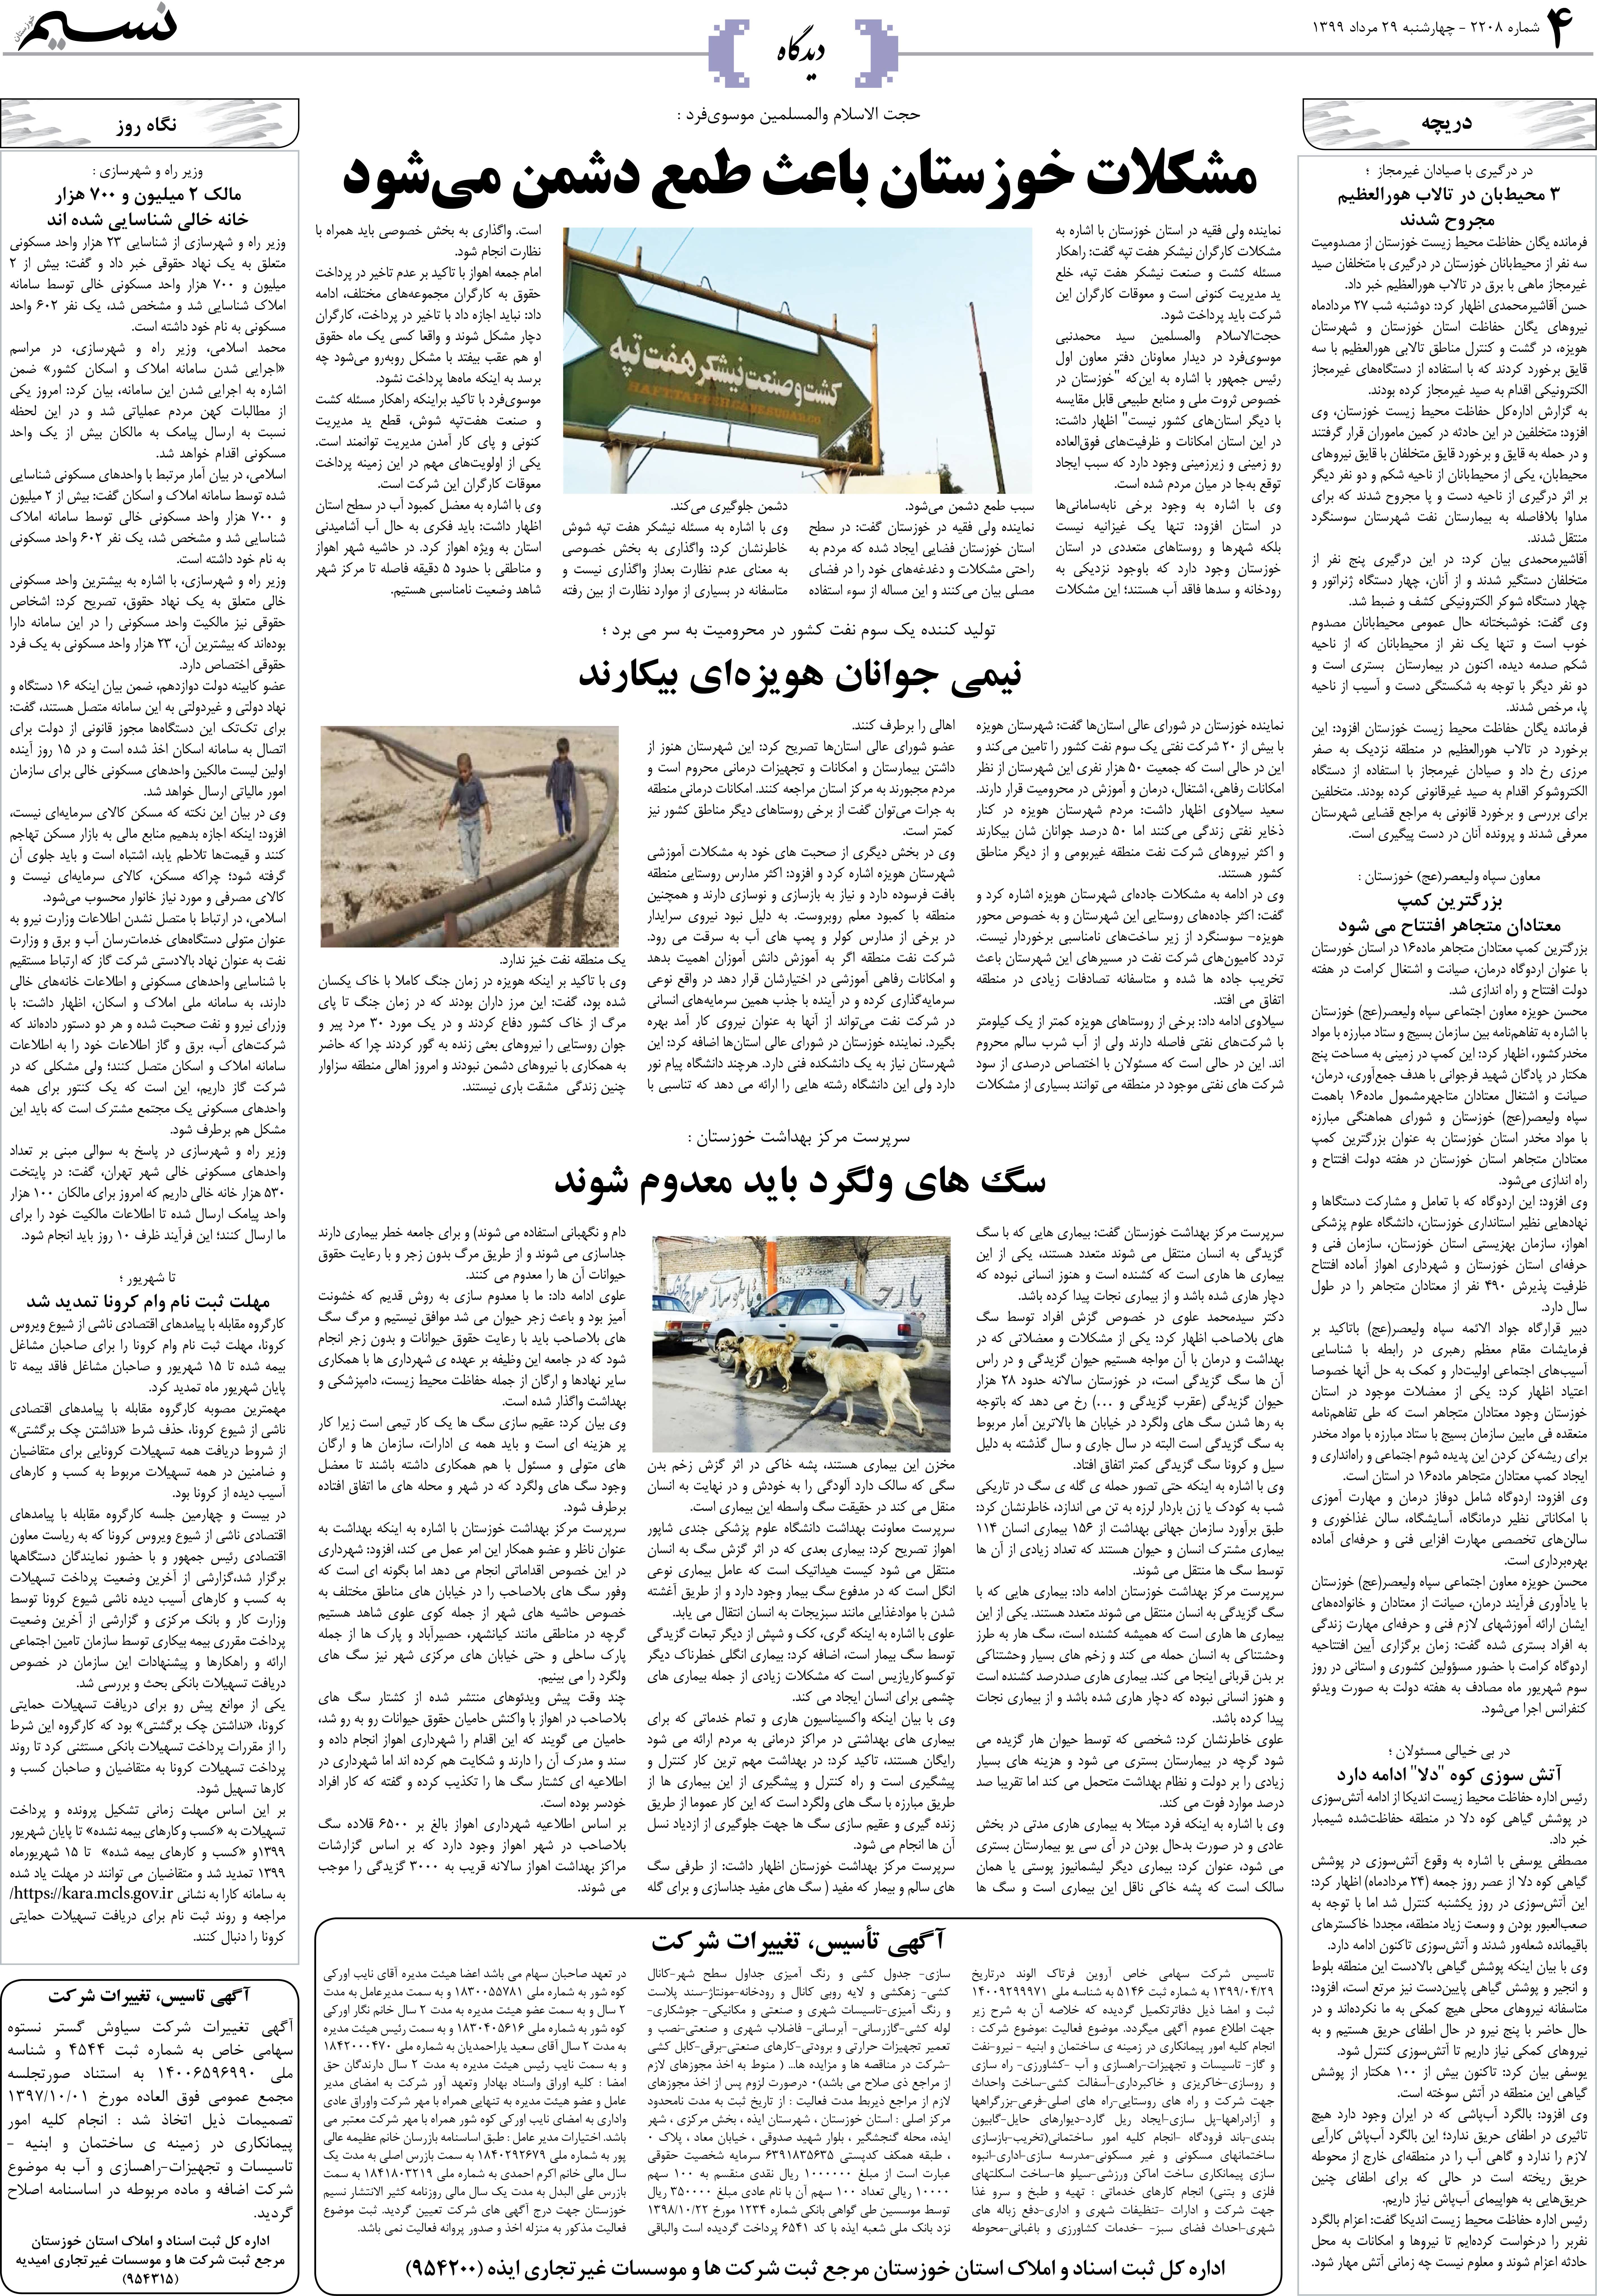 صفحه دیدگاه روزنامه نسیم شماره 2208